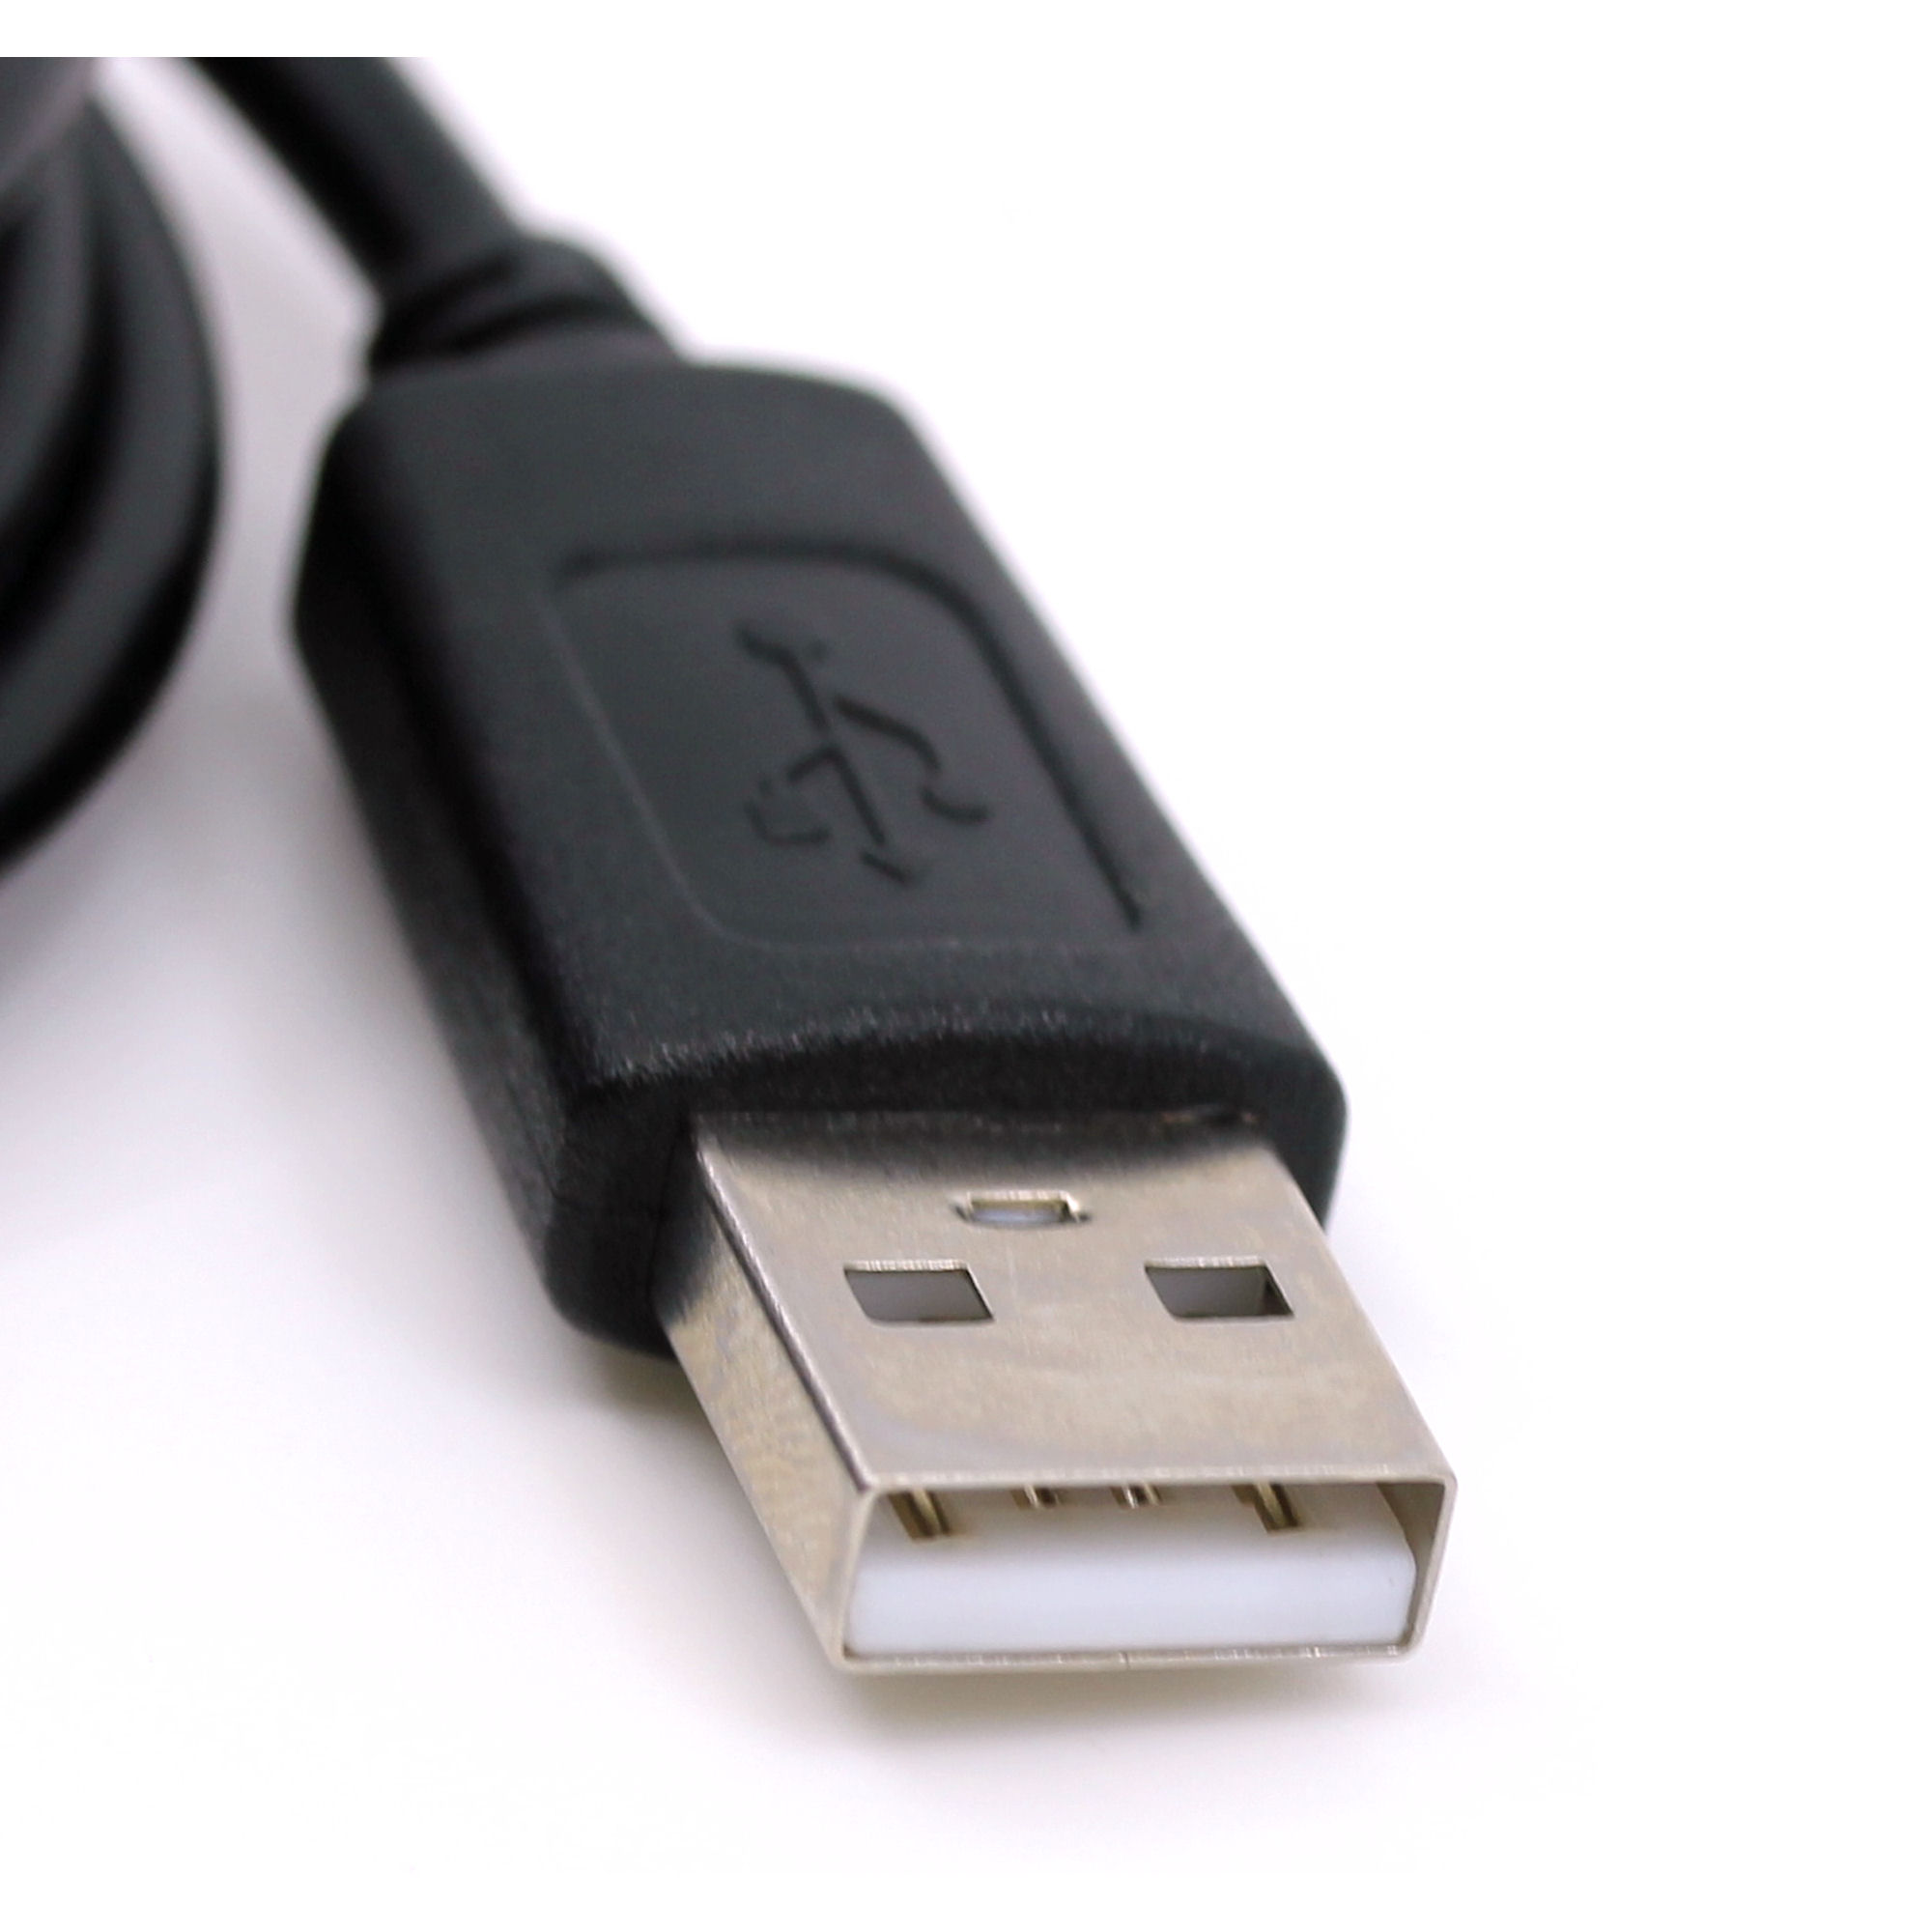 USB Datenkabel für Olympus Camedia C735, C740, C750, C750 Ultra Zoom, C765, C8080, D380, D380 Stylus